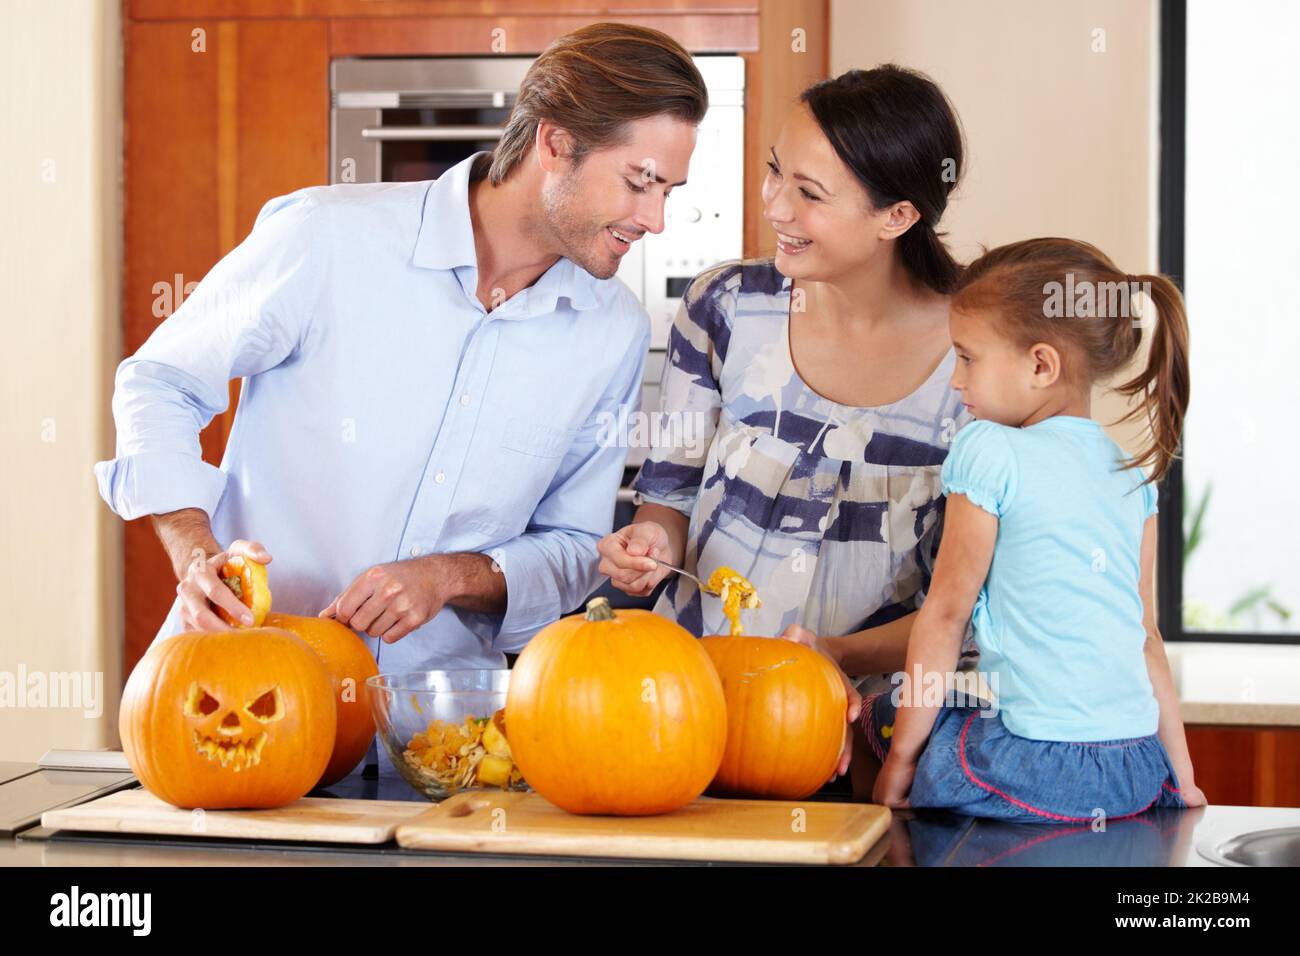 Préparer la citrouille pour Halloween. Une jeune mère et un père debout avec leur jeune fille dans une cuisine préparant Jack Olanternes pour Halloween. Banque D'Images